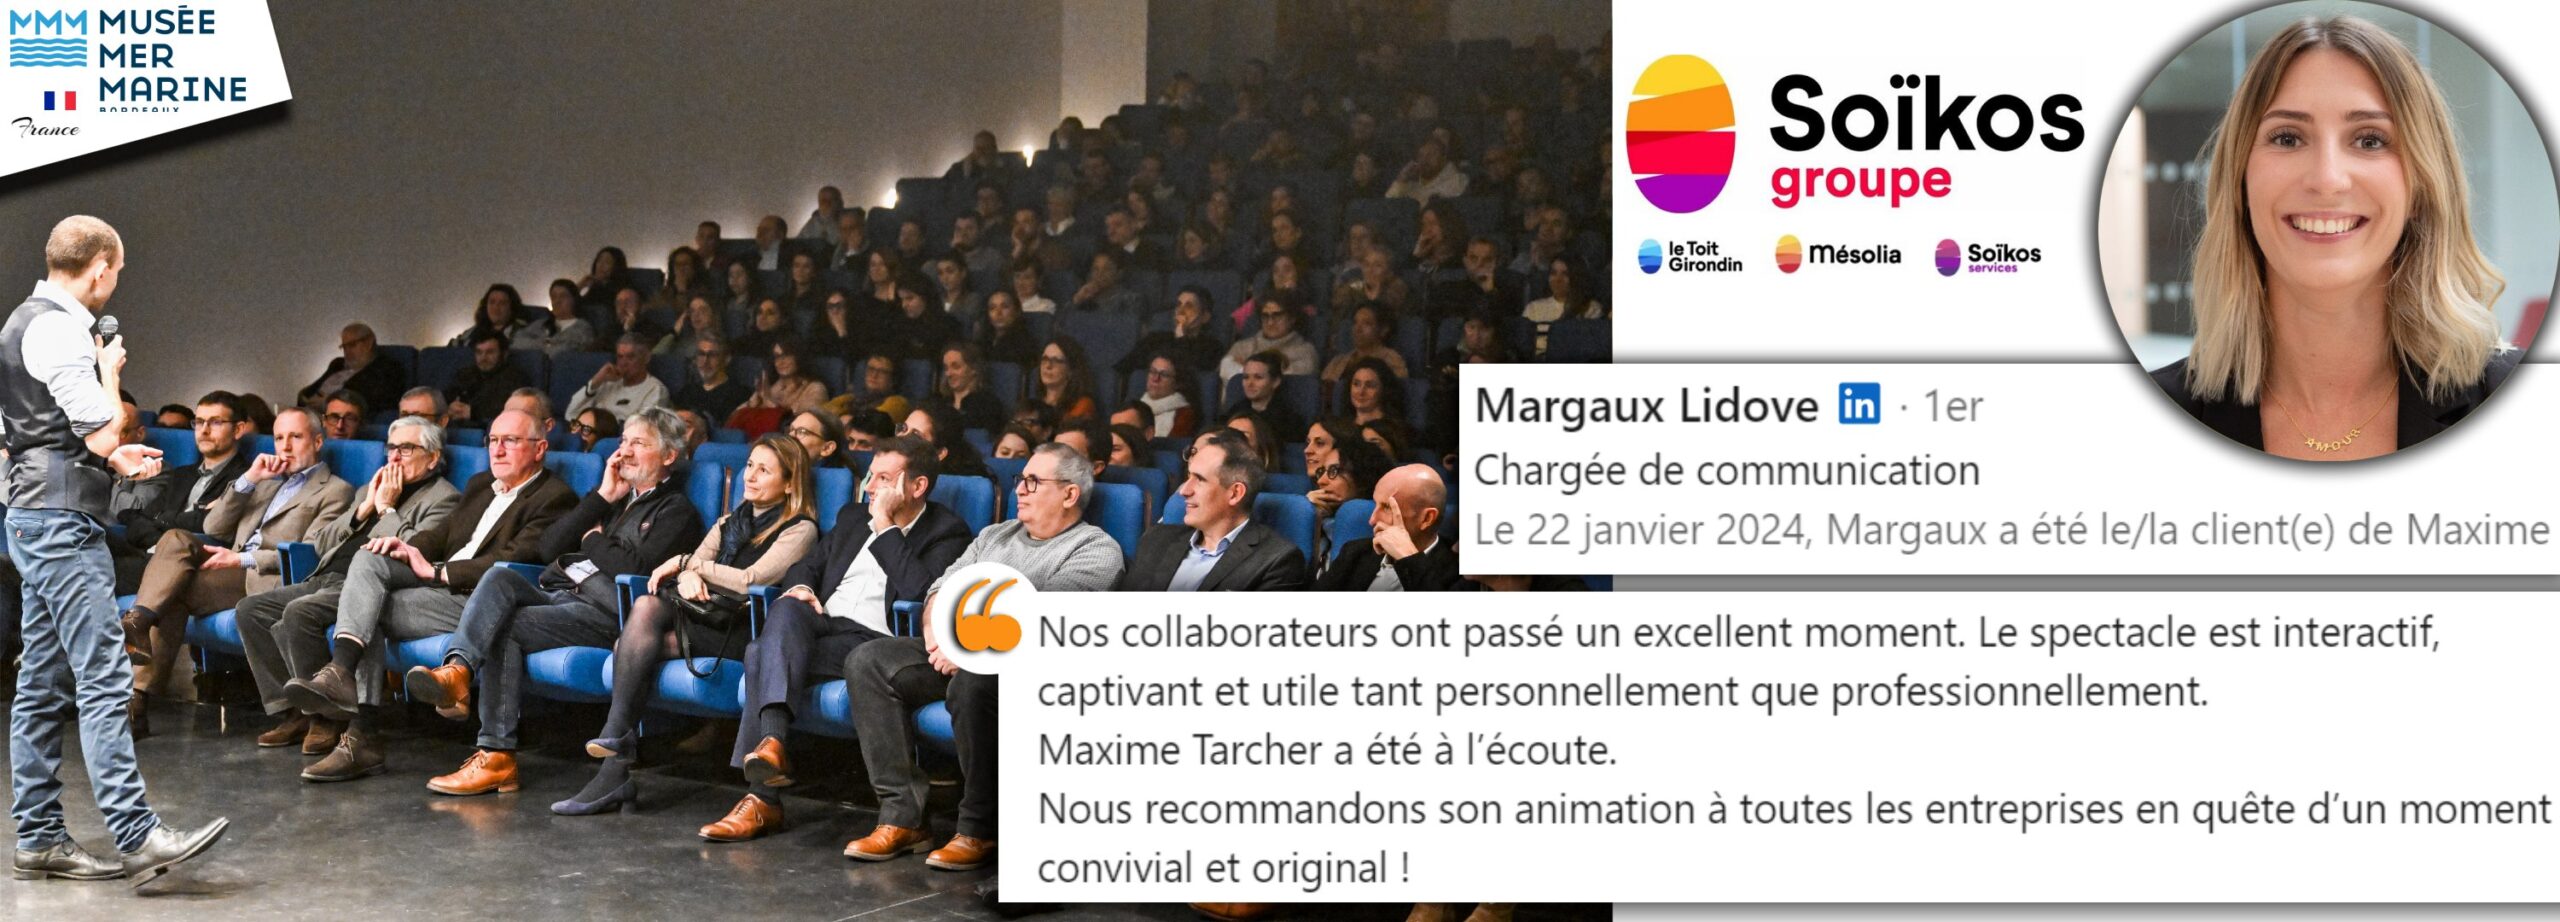 Margaux LIDOVE - Groupe SOIKOS mémoire maxime tarcher conférencier entreprise musée mer maritime janvier 2024